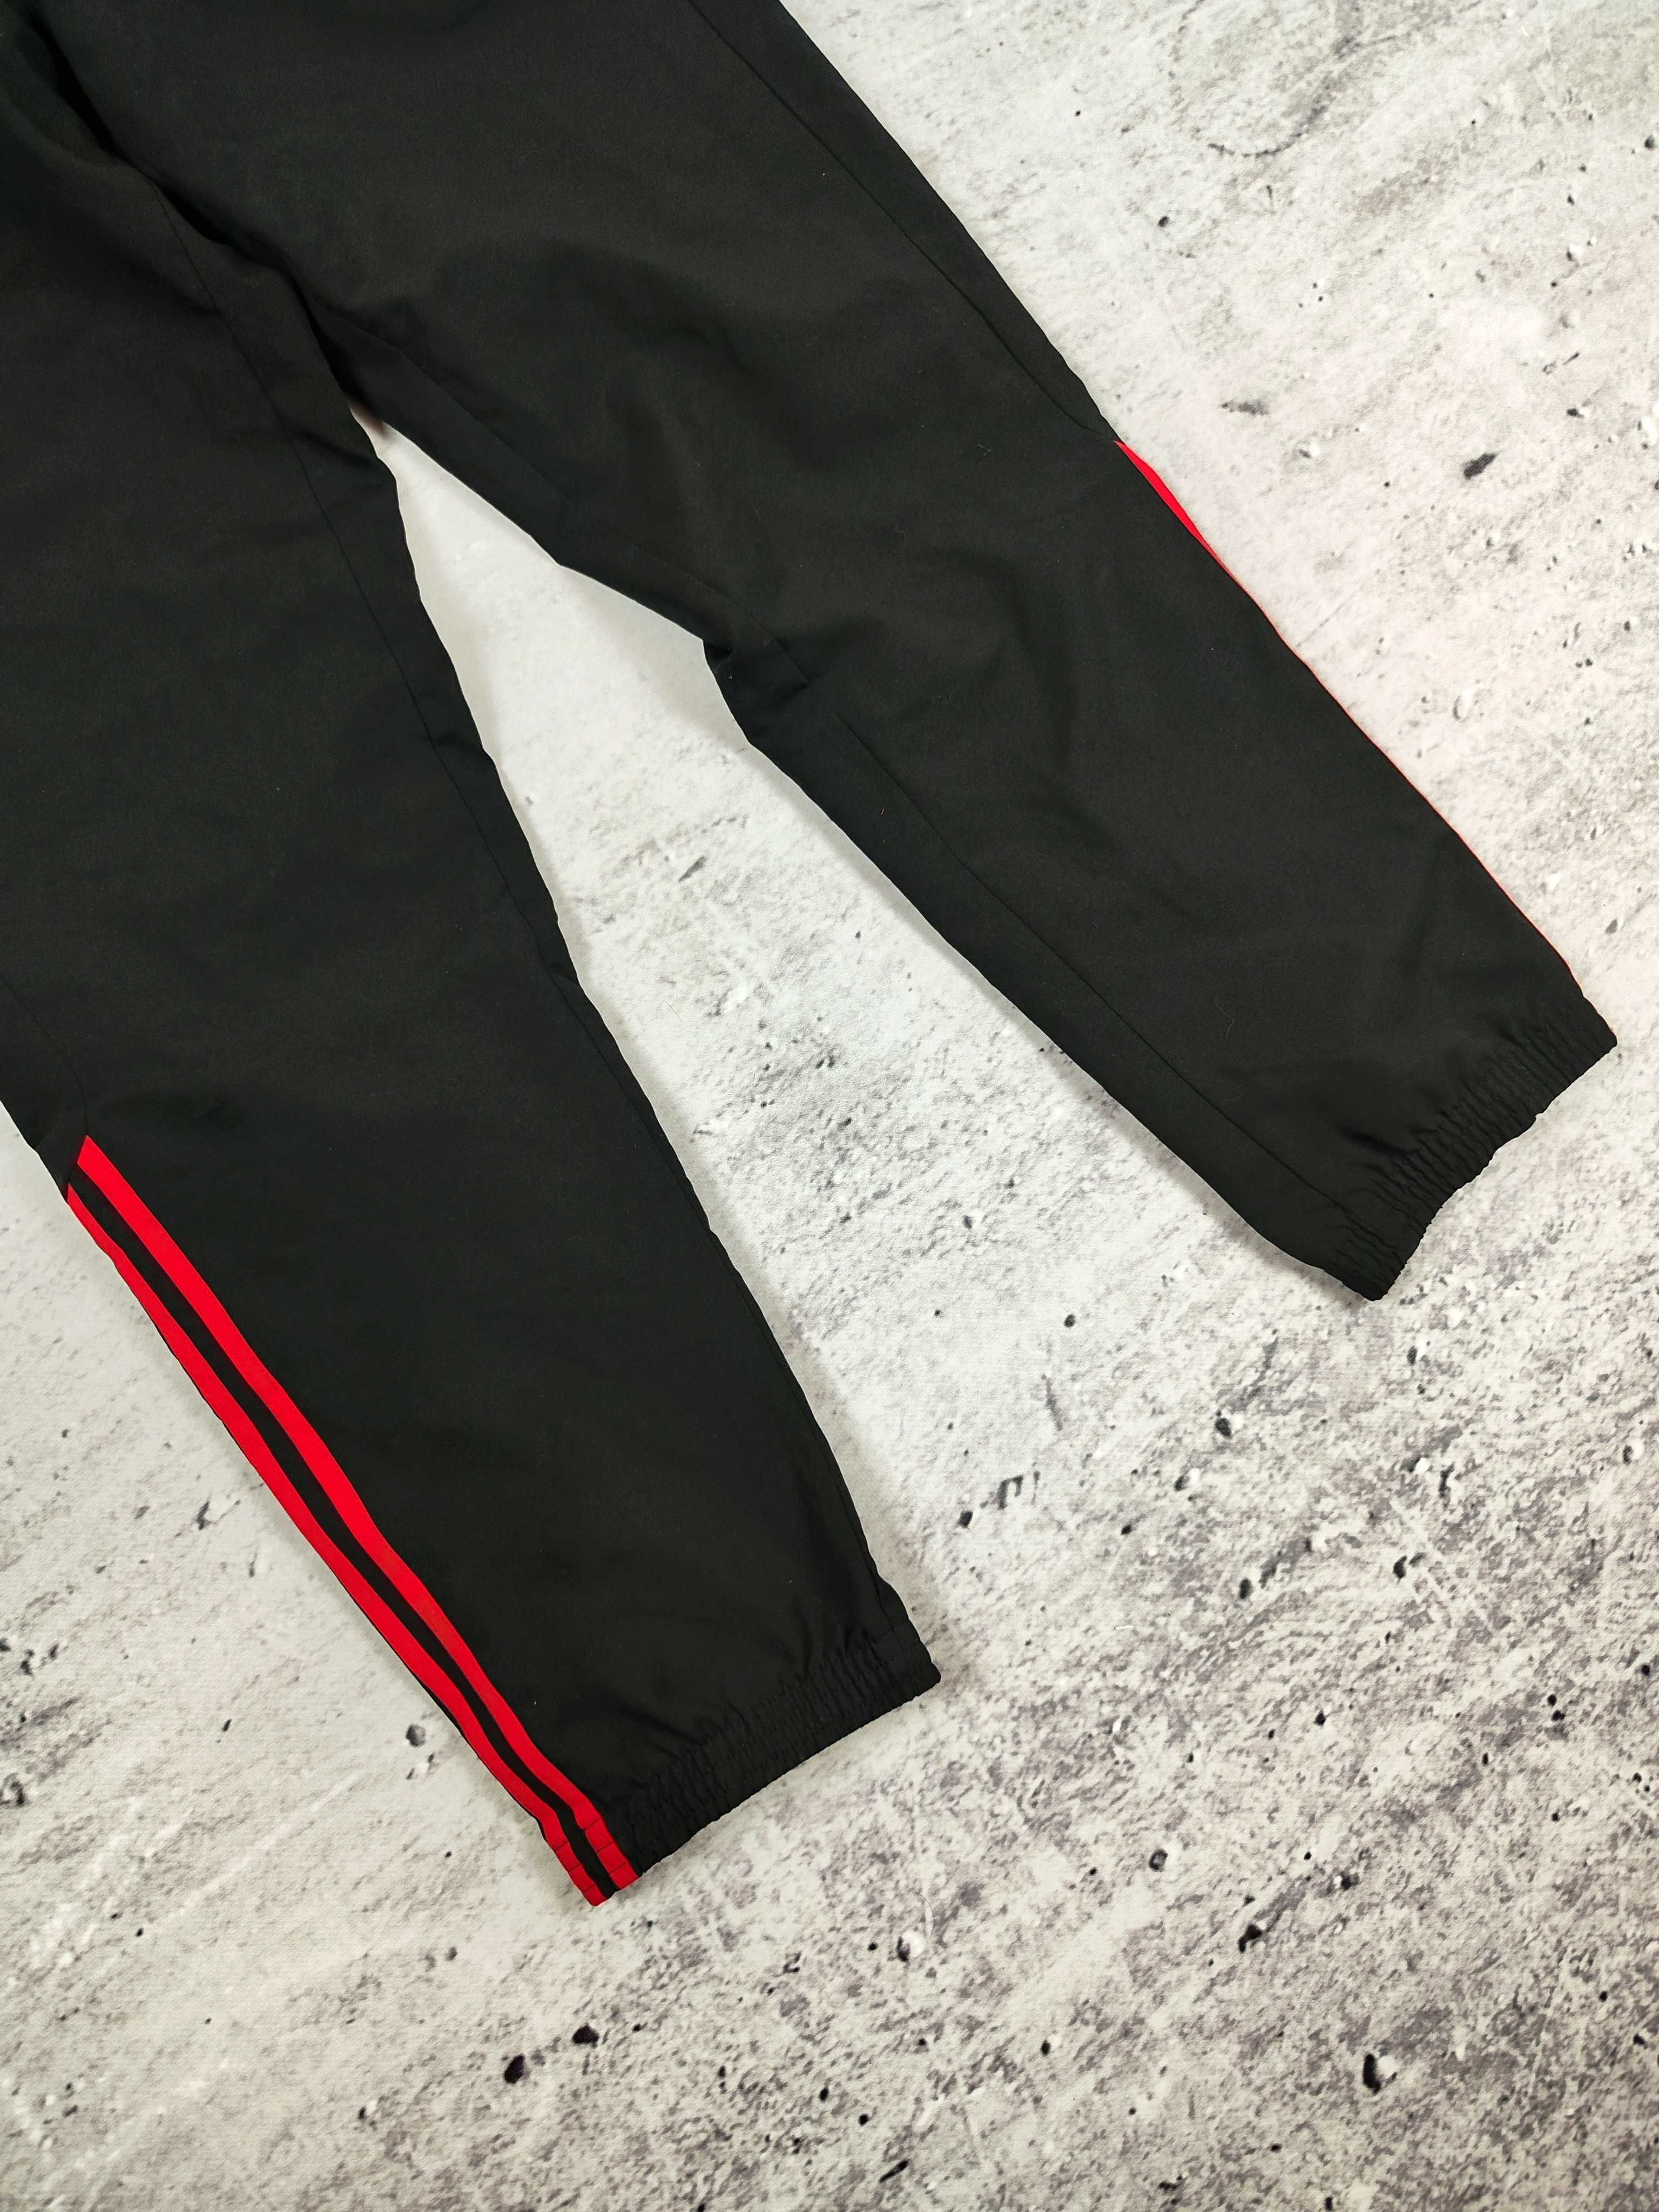 Spodnie dresowe Adidas czarne dresy streetwear 90s r. M